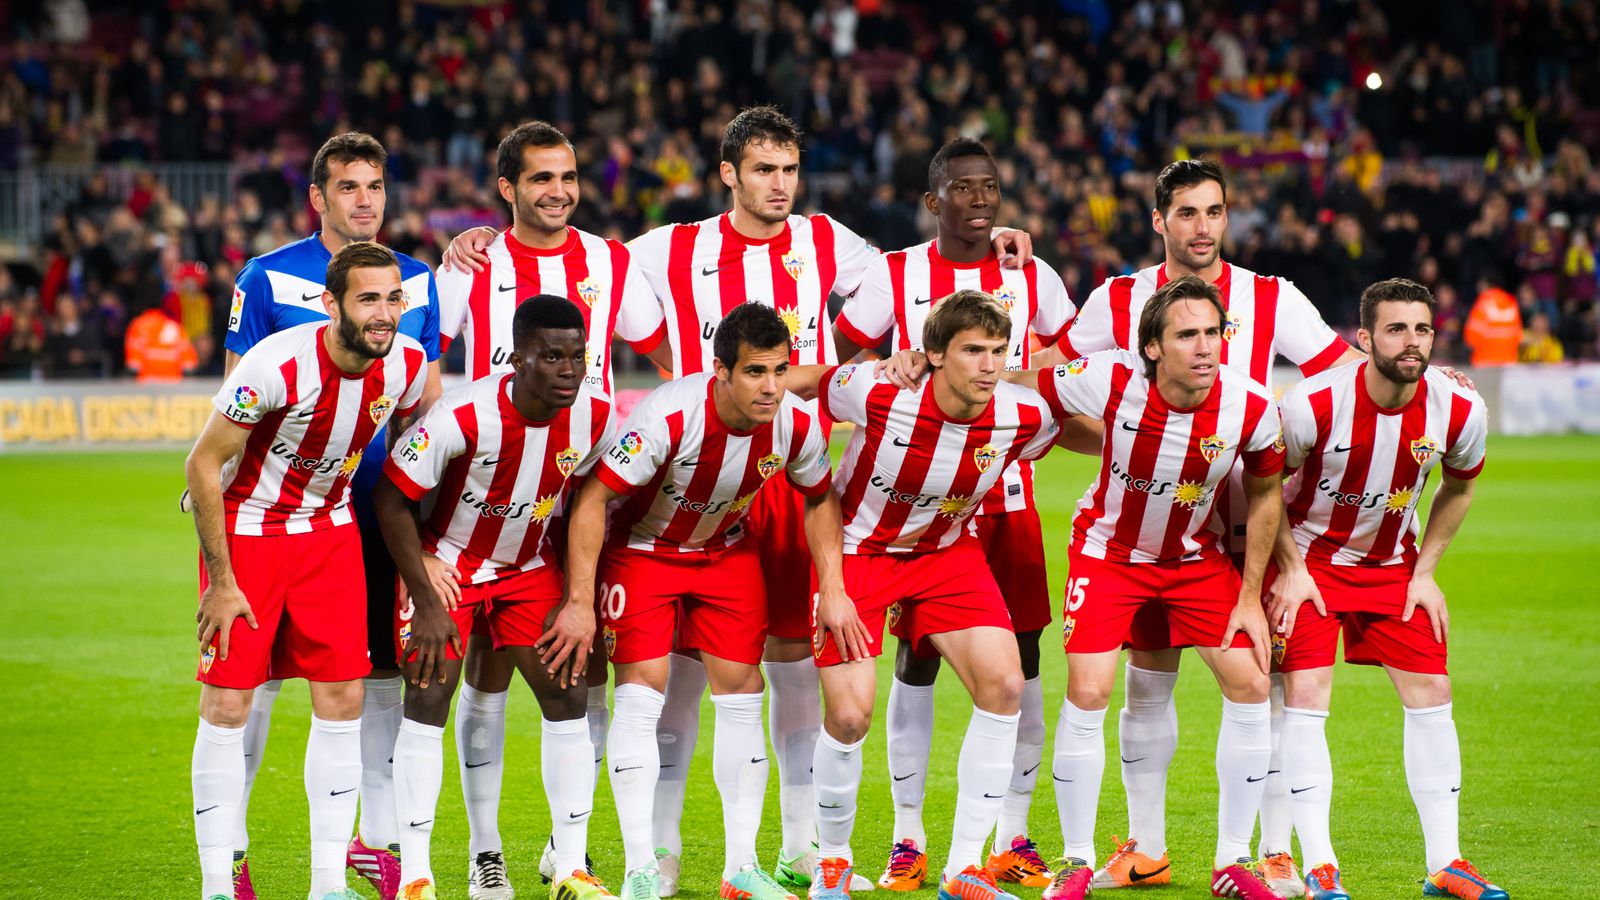 Almeria là một trong những câu lạc bộ bóng đá đang thi đấu ở La Liga